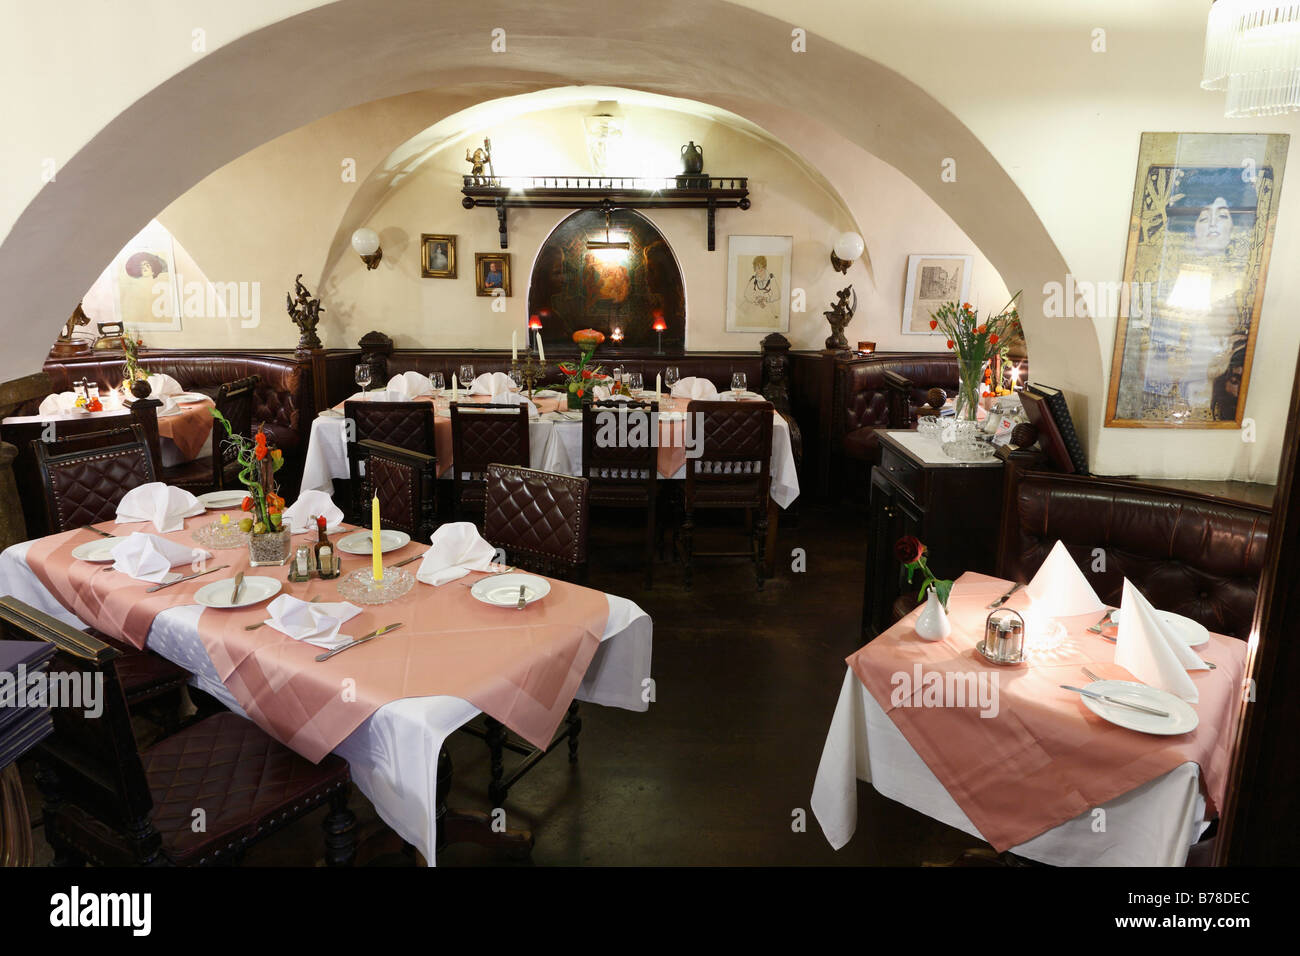 Restaurant 'Zum Basilisken' in Schoenlaternengasse, city, Vienna, Austria, Europe Stock Photo